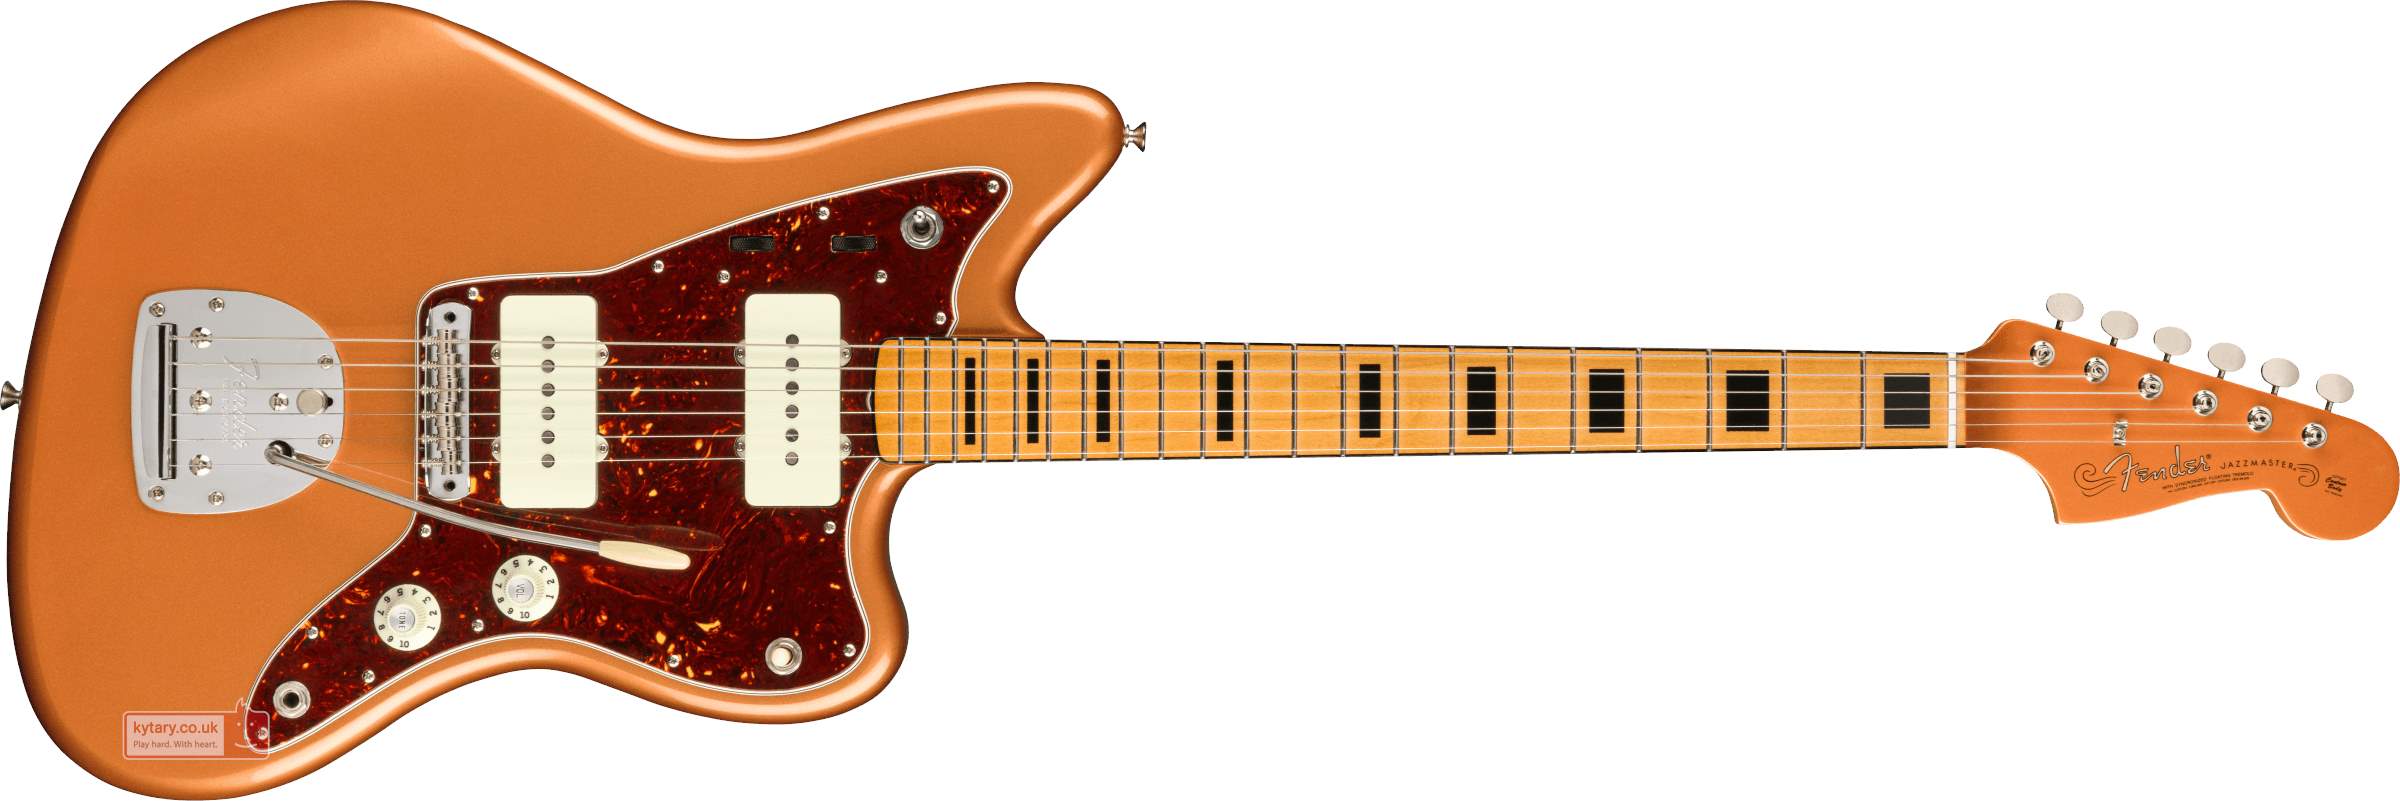 Fender Troy Van Leeuwen Jazzmaster Copper Age